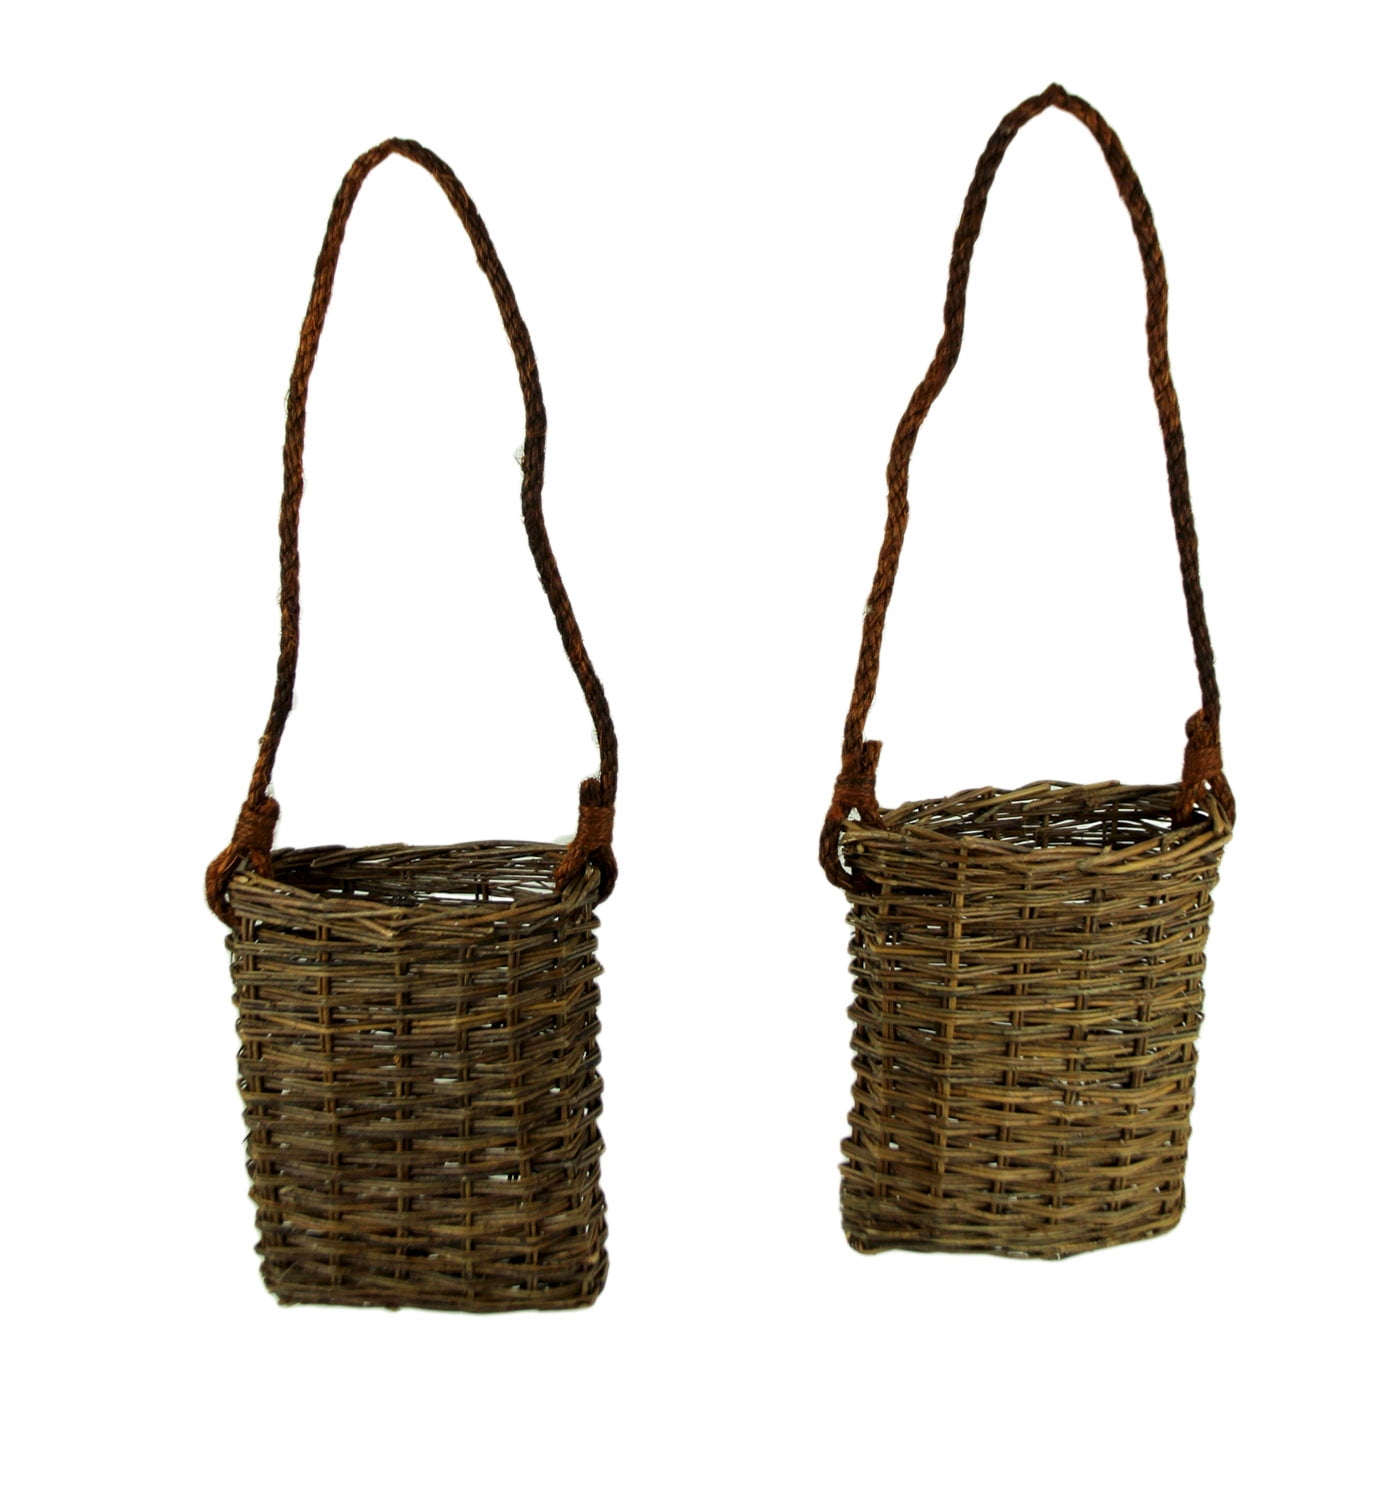 Entry Door Basket Vintage Wicker Wall Basket Wicker Basket Basket with Handle Flower Basket Door Hanger Hanging Door Basket